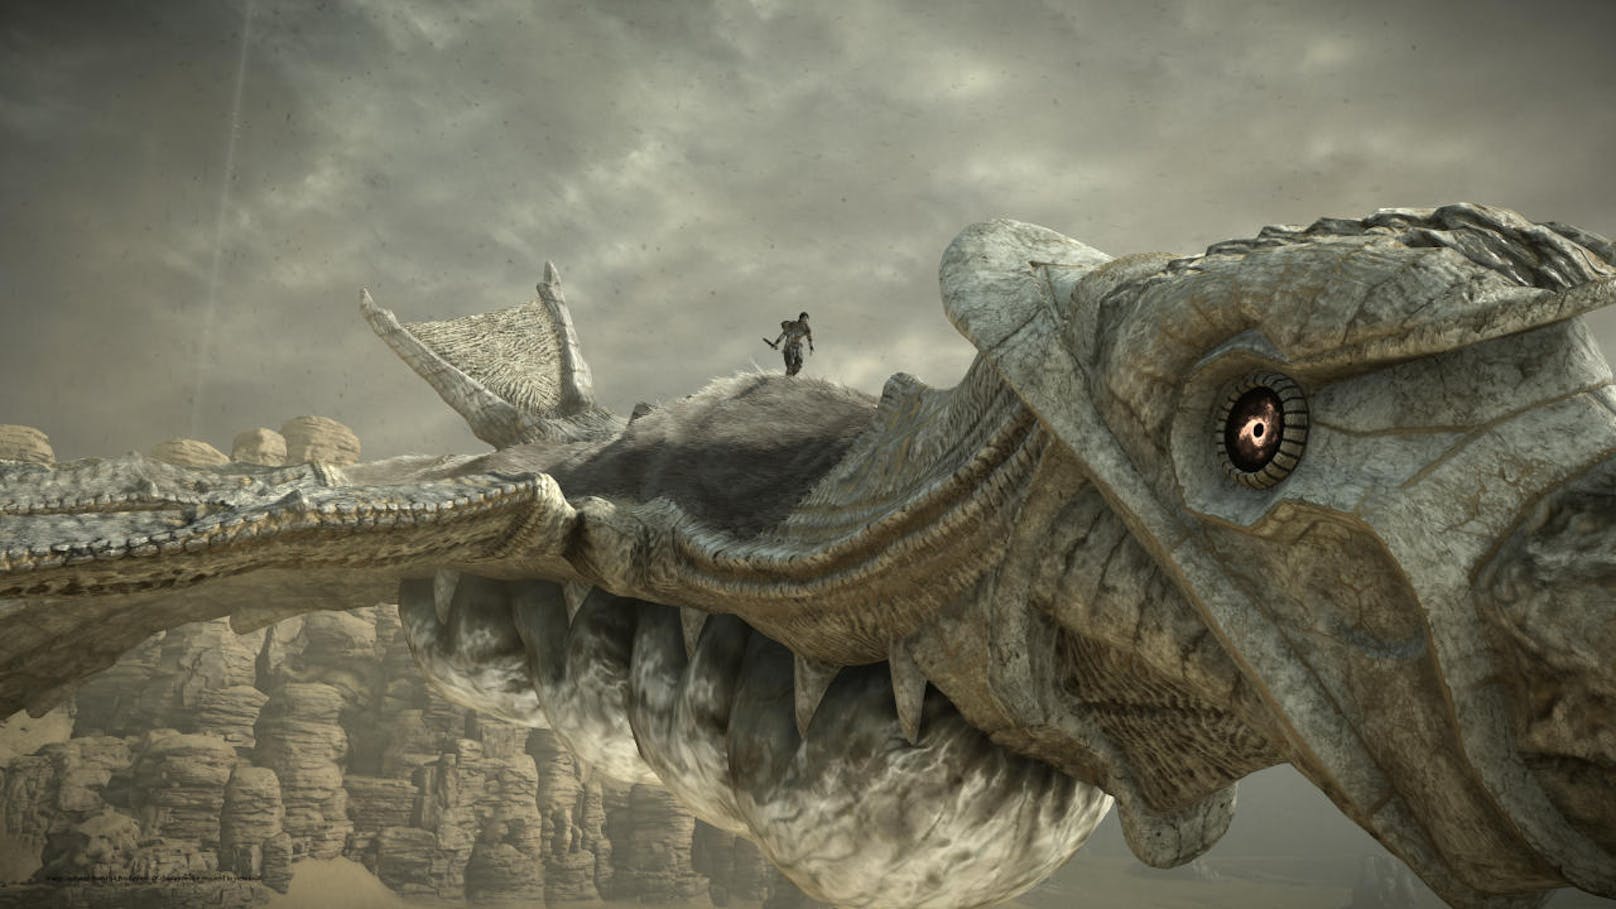 Eine der größten Neuerungen in Shadow of the Colossus ist der Fotomodus. Wie in Horizon Zero Dawn oder anderen neuer PlayStation-Games kann man das Spiel nun pausieren, die Kamera um 360 Grad schwenken, die Szene knipsen und mit allen möglichen künstlerischen Filtern und Effekten belegen.